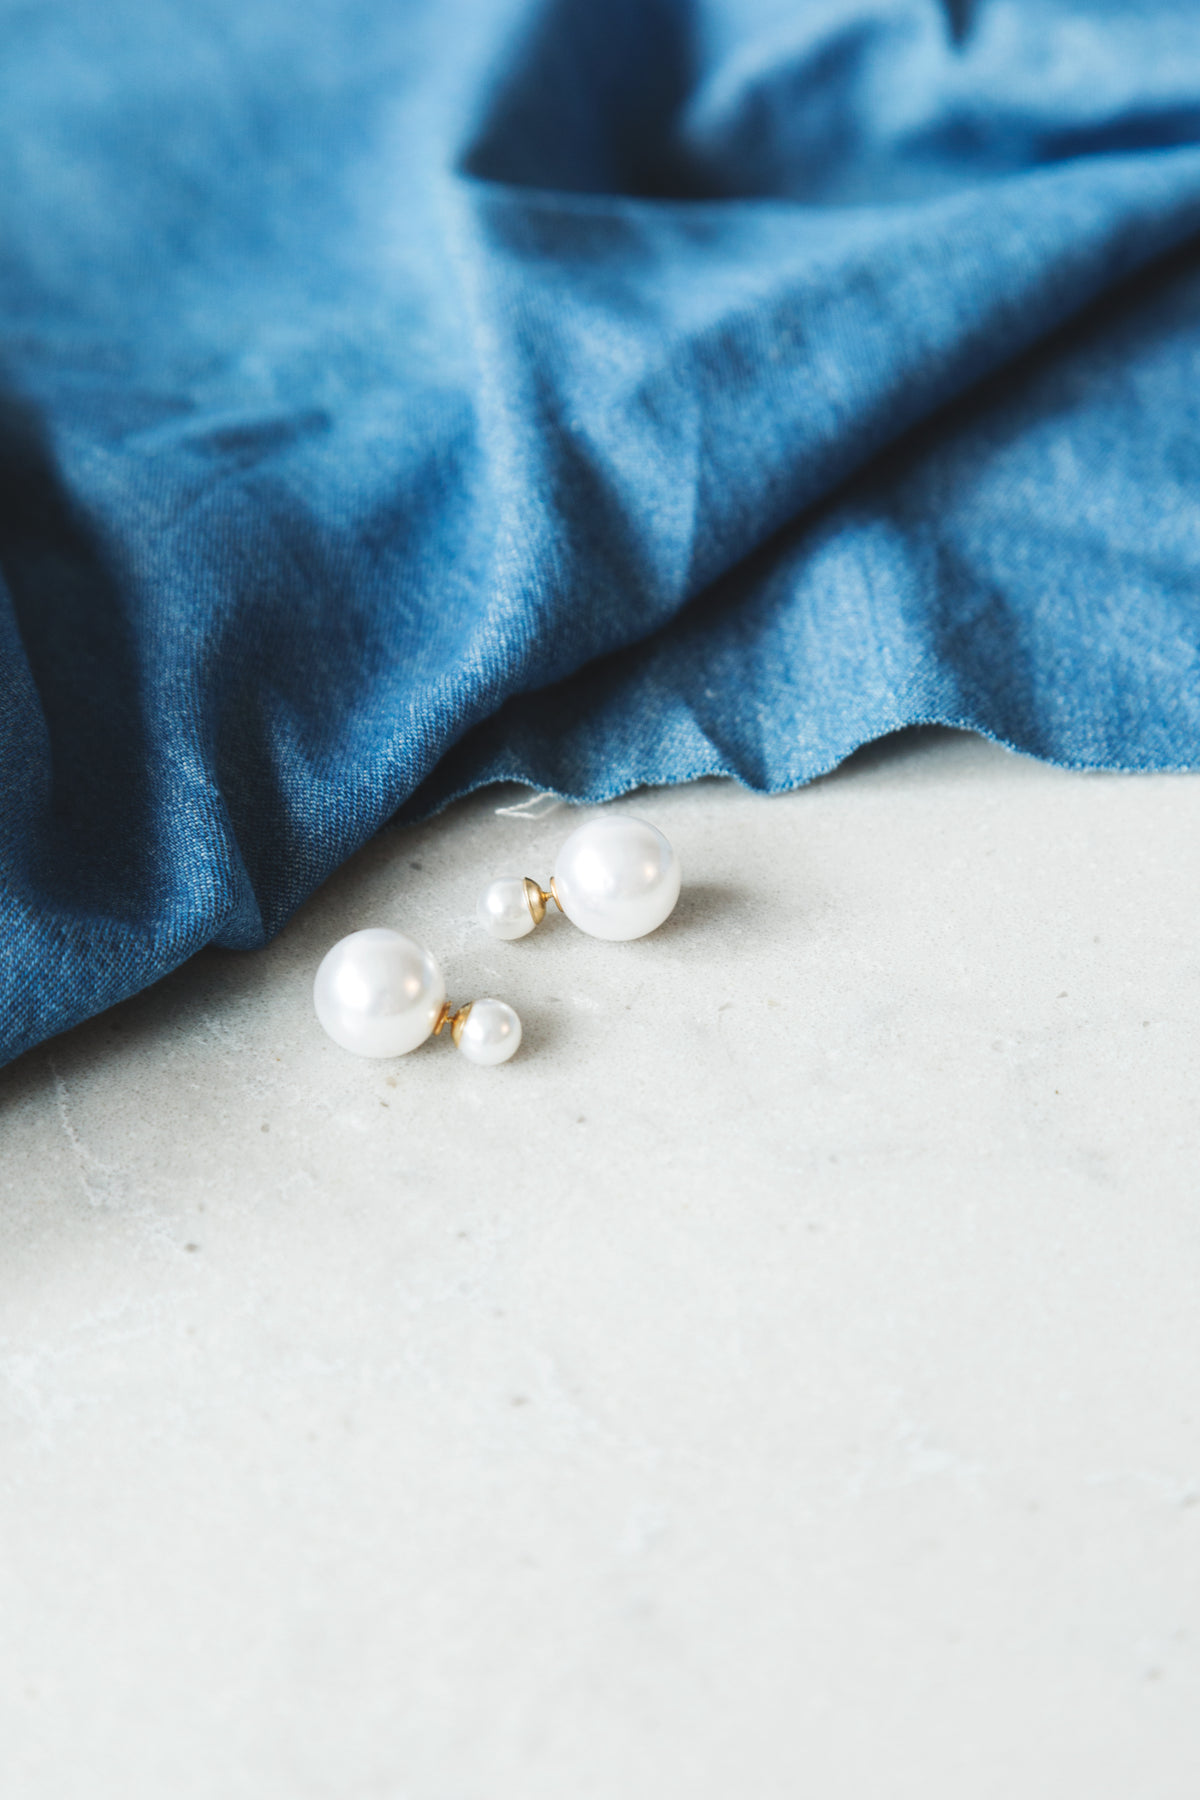 pearl earrings on end table